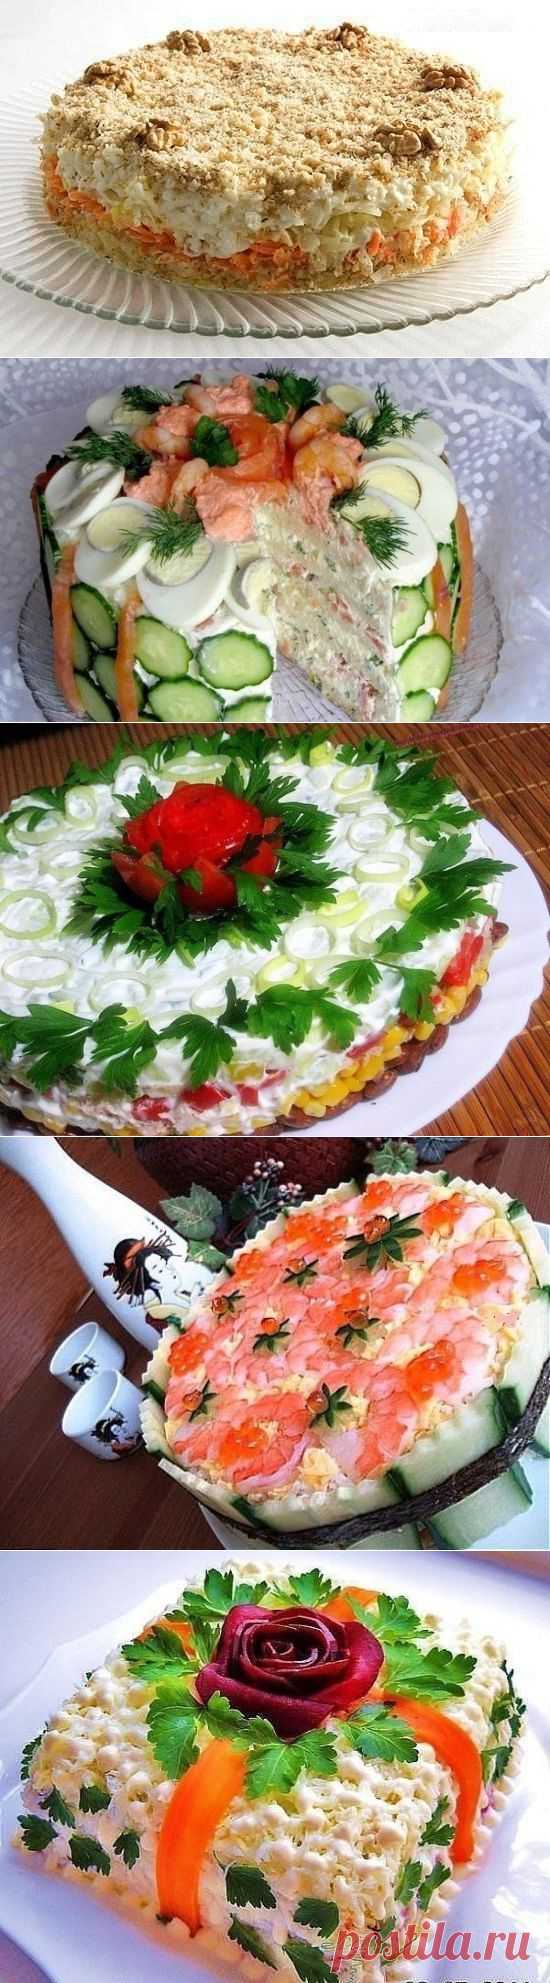 Подборка лучших рецептов салатов-тортов, которые всегда украсят Ваш праздничный стол !!!! | Готовим вместе